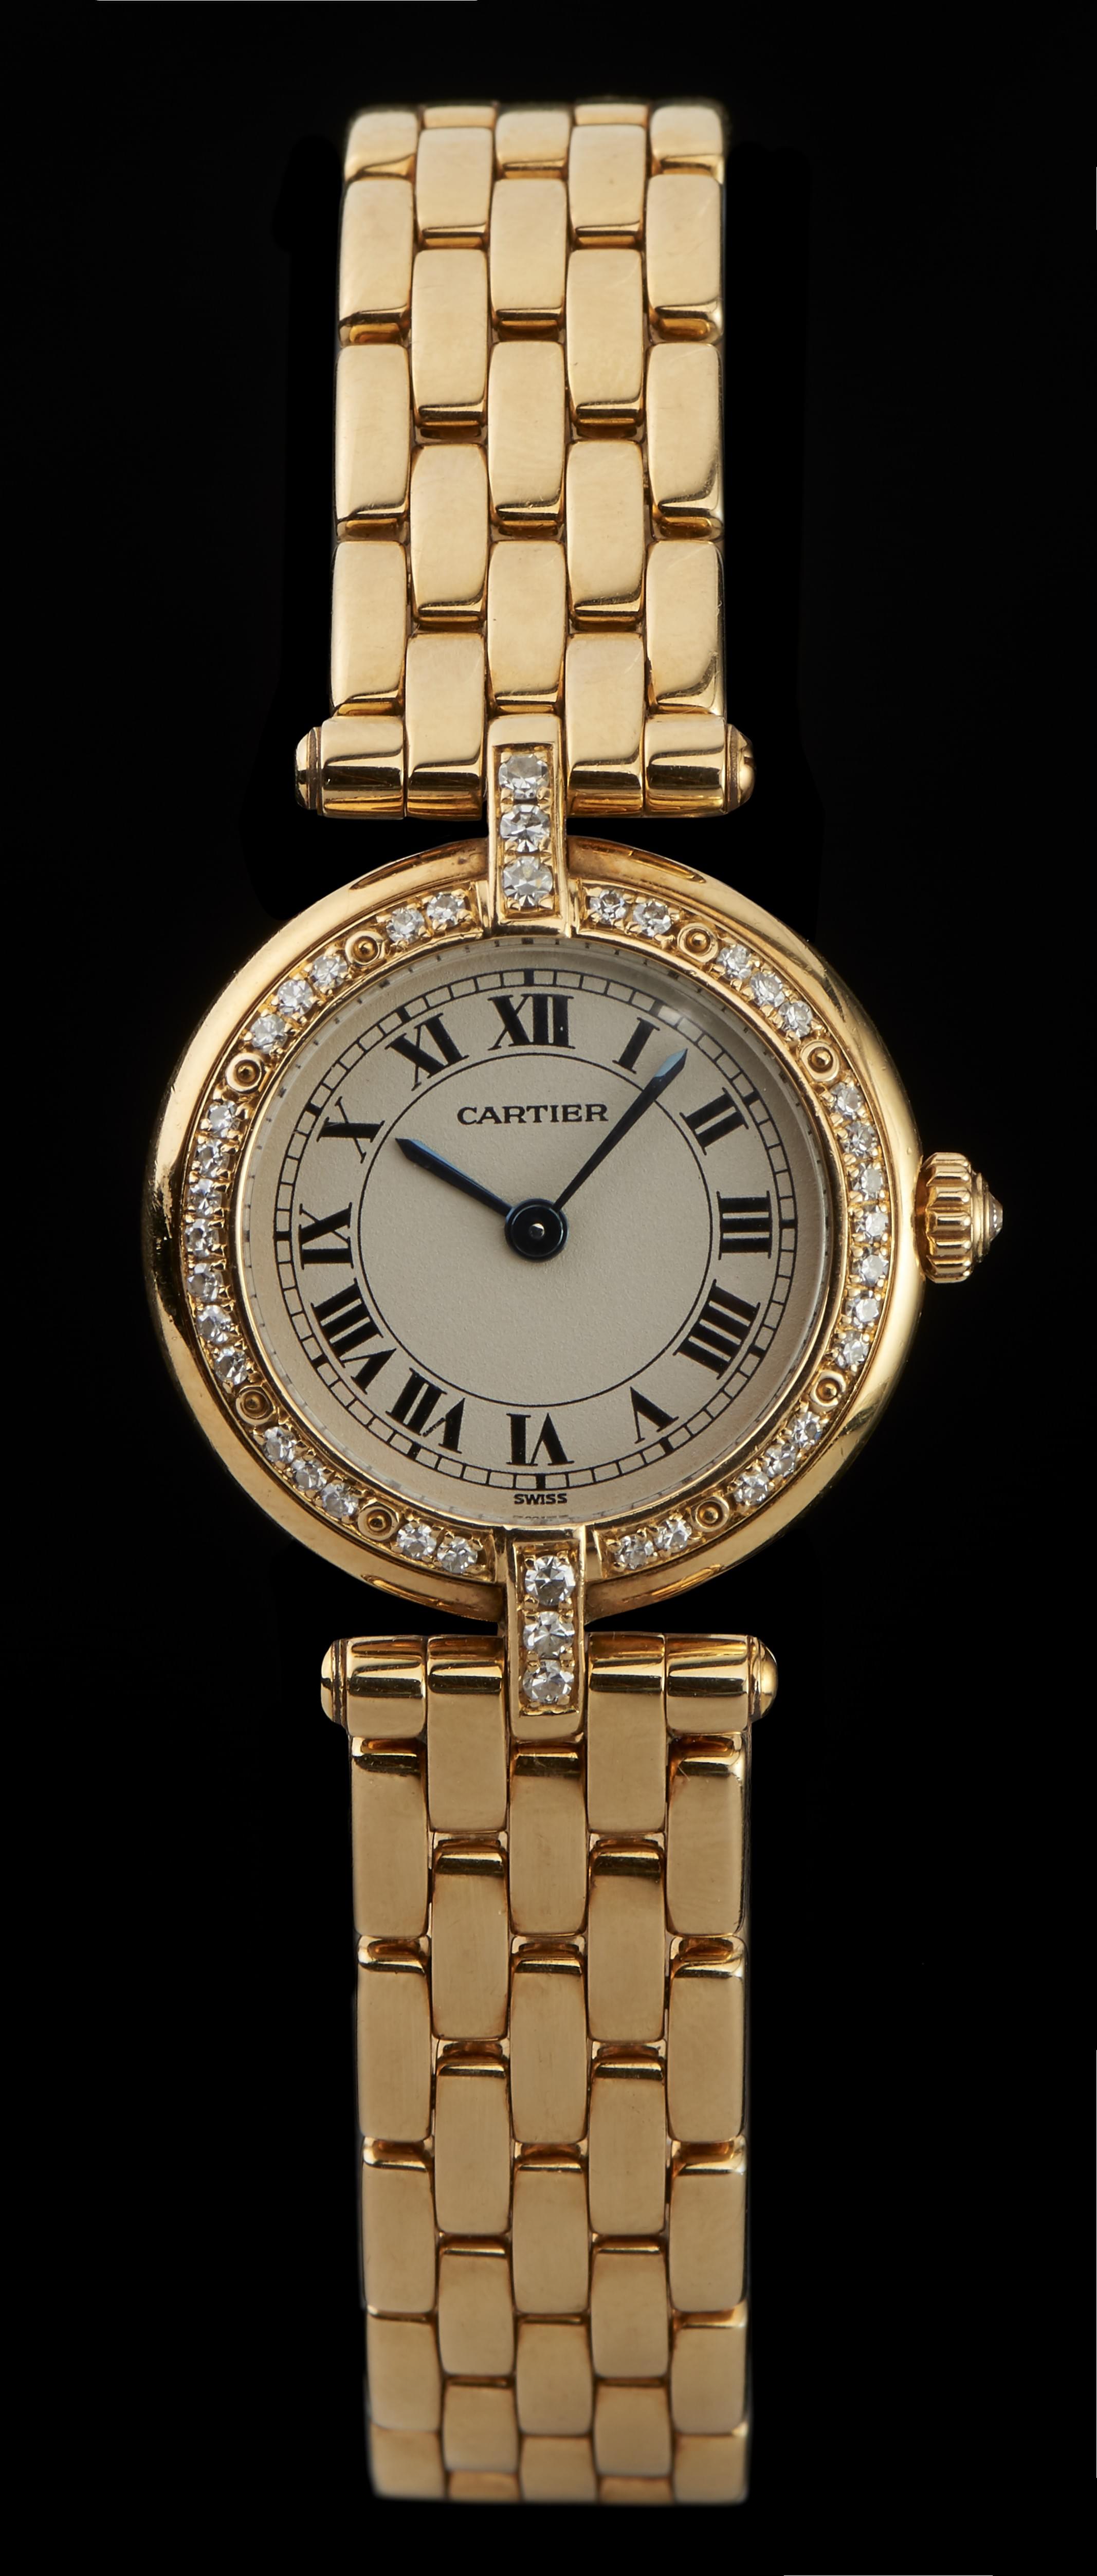 Cartier, Panthère, montre bracelet ronde à quartz sertie de diamants